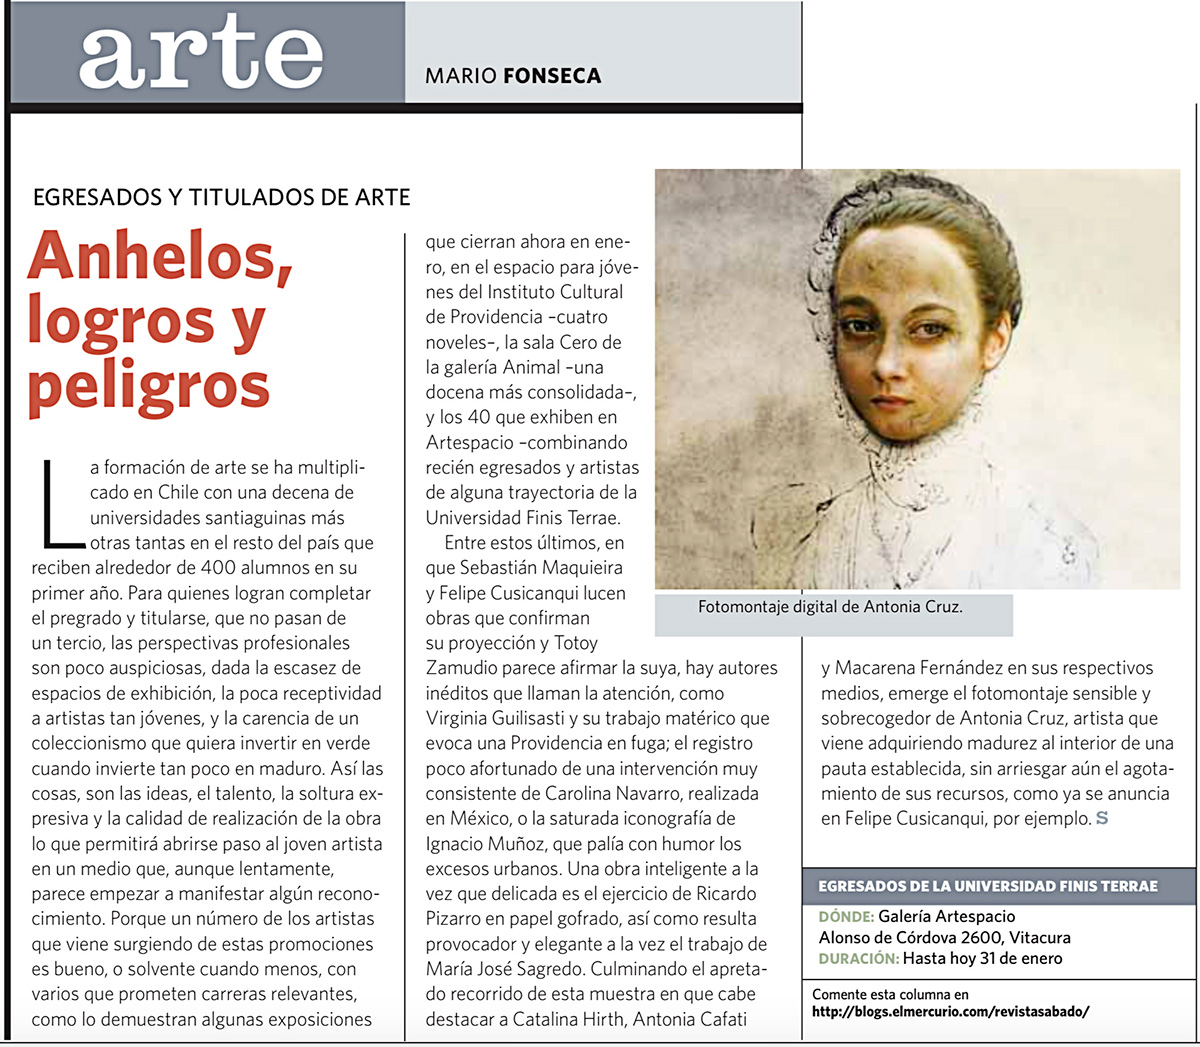 Exposición “Territorios de papel y Escenas Cotidianas”, El Mercurio, Revista Sabado